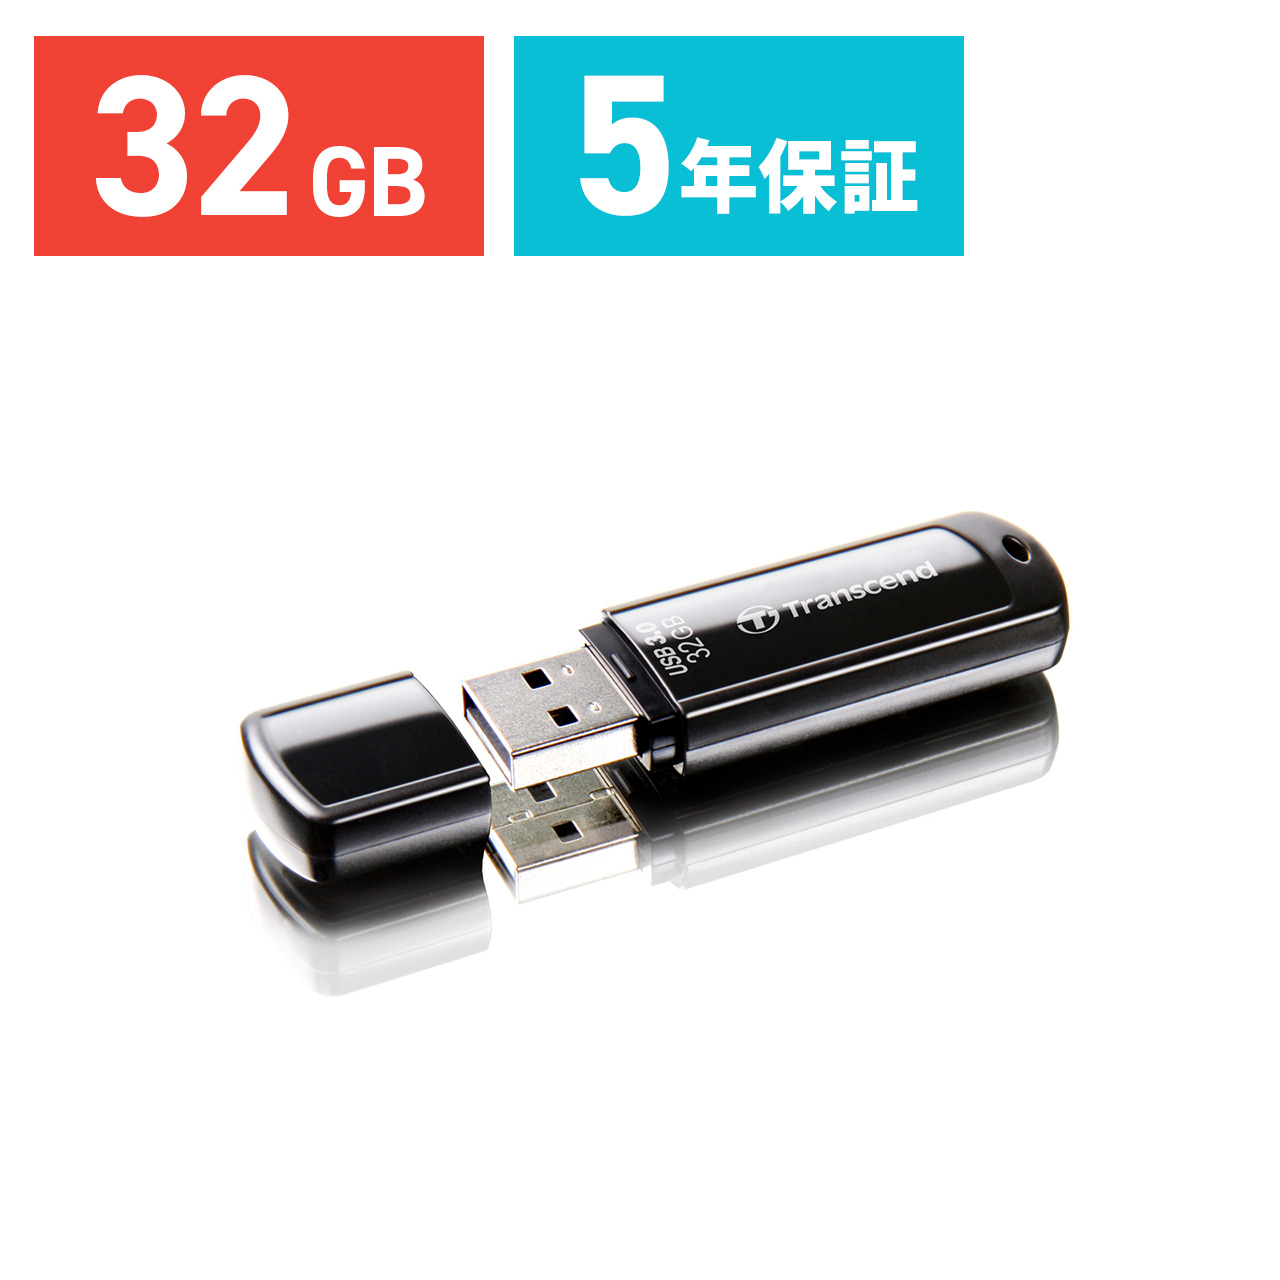 Transcend USBメモリ 32GB USB3.1(Gen1) JetFlash 700 ブラック TS32GJF700 TS32GJF700